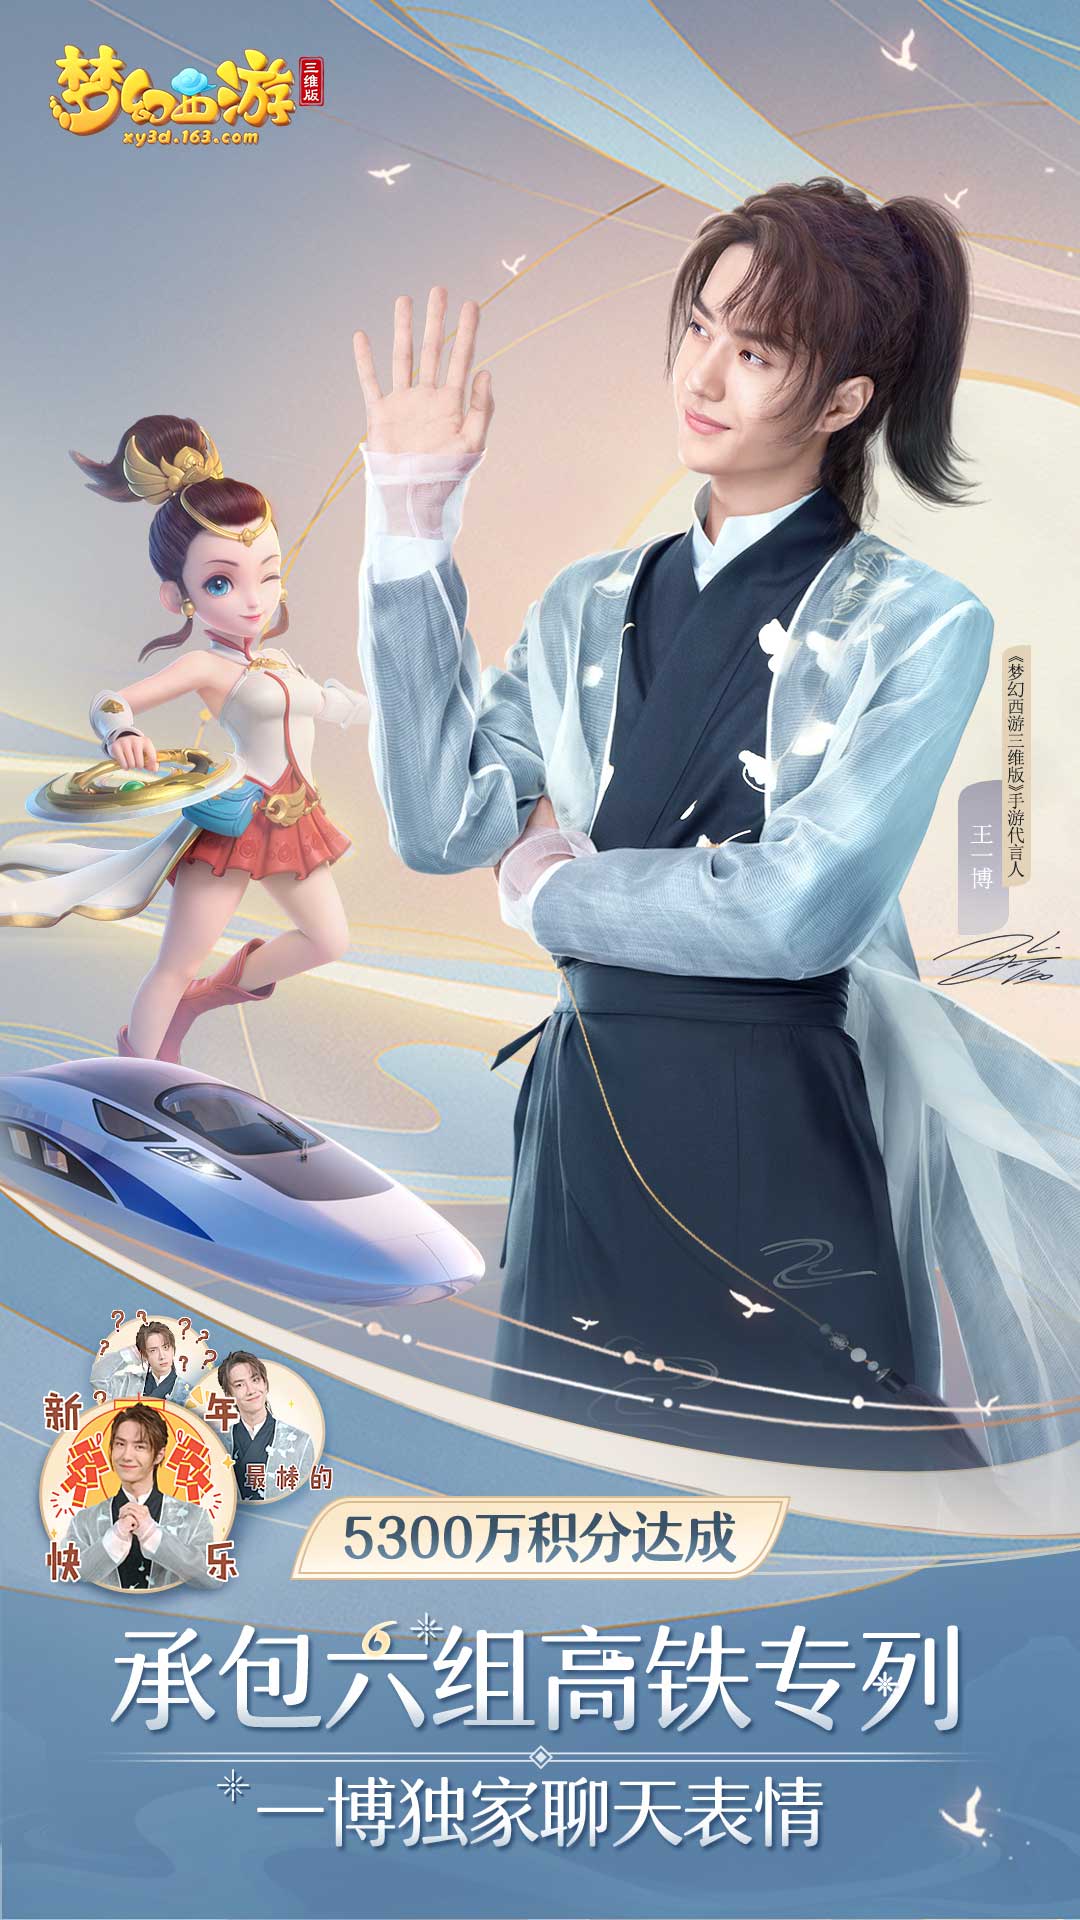 《梦幻西游三维版》互通服&春运主题高铁来袭!